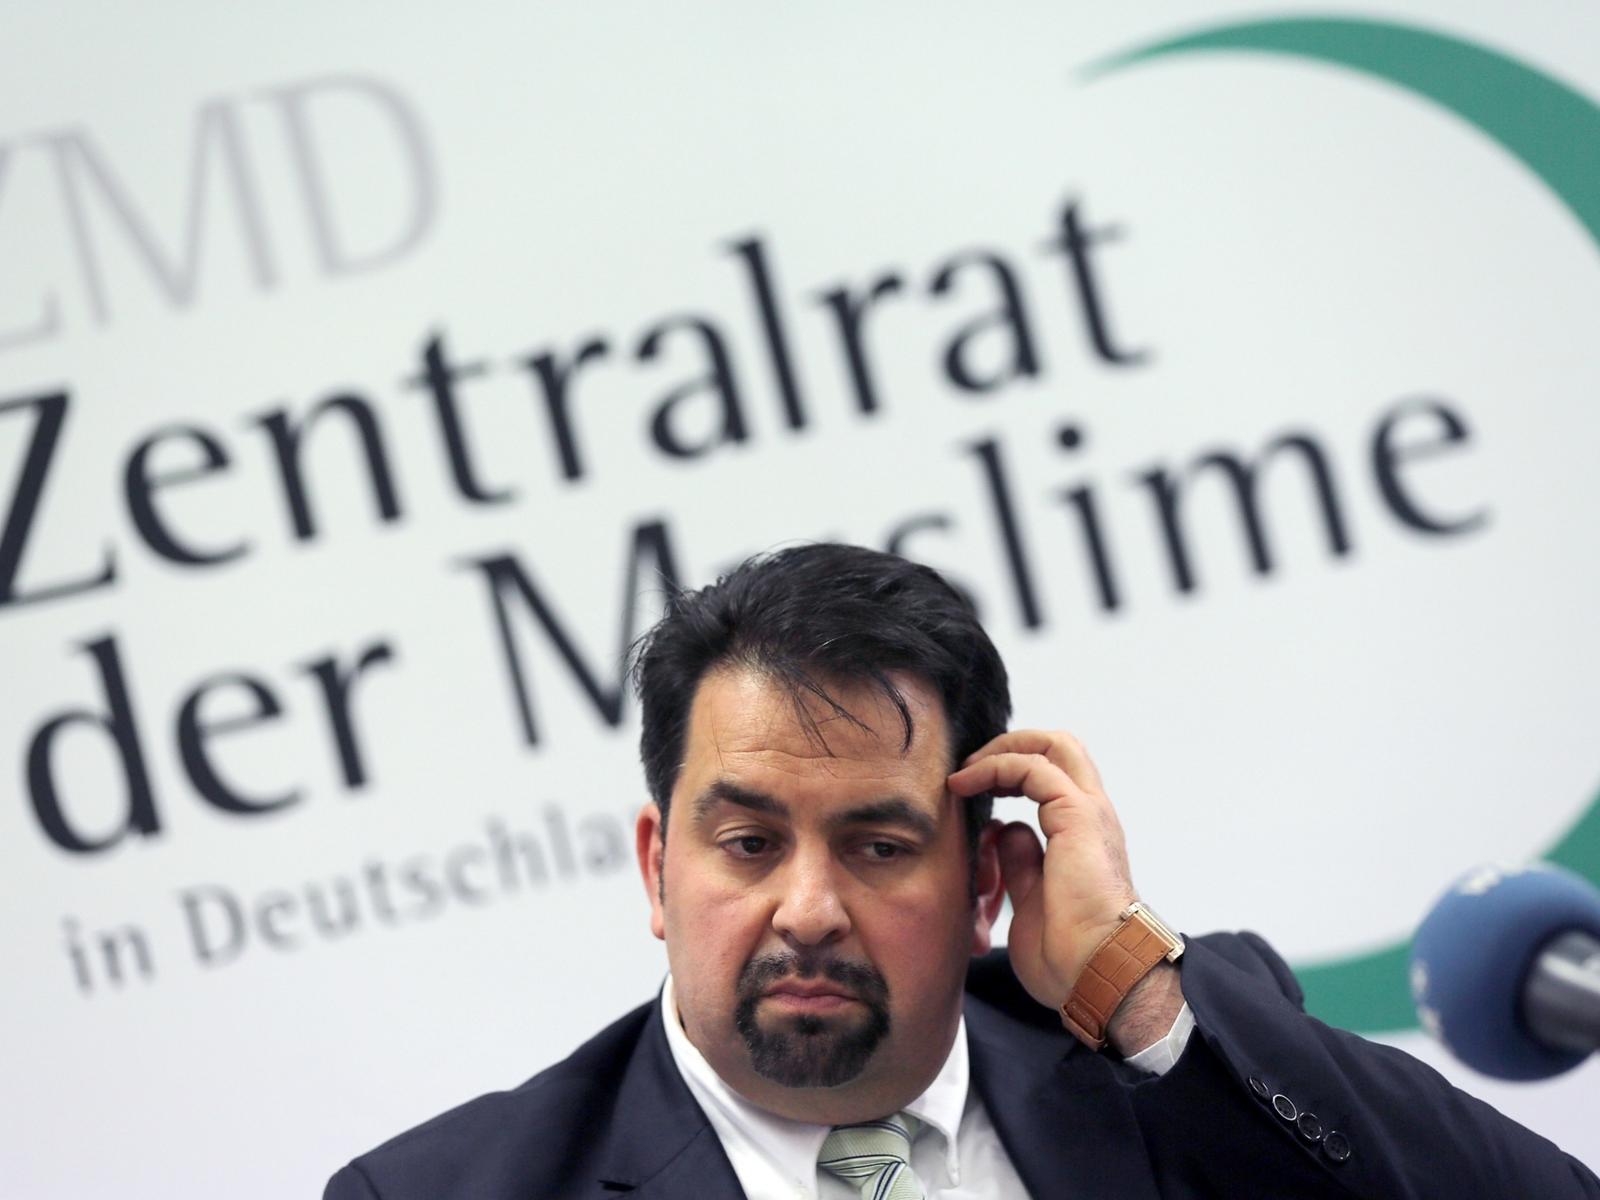 محاربة التطرف في ألمانيا ـ مجلس المسلمين، وماذا يربطه بالإخوان المسلمين؟